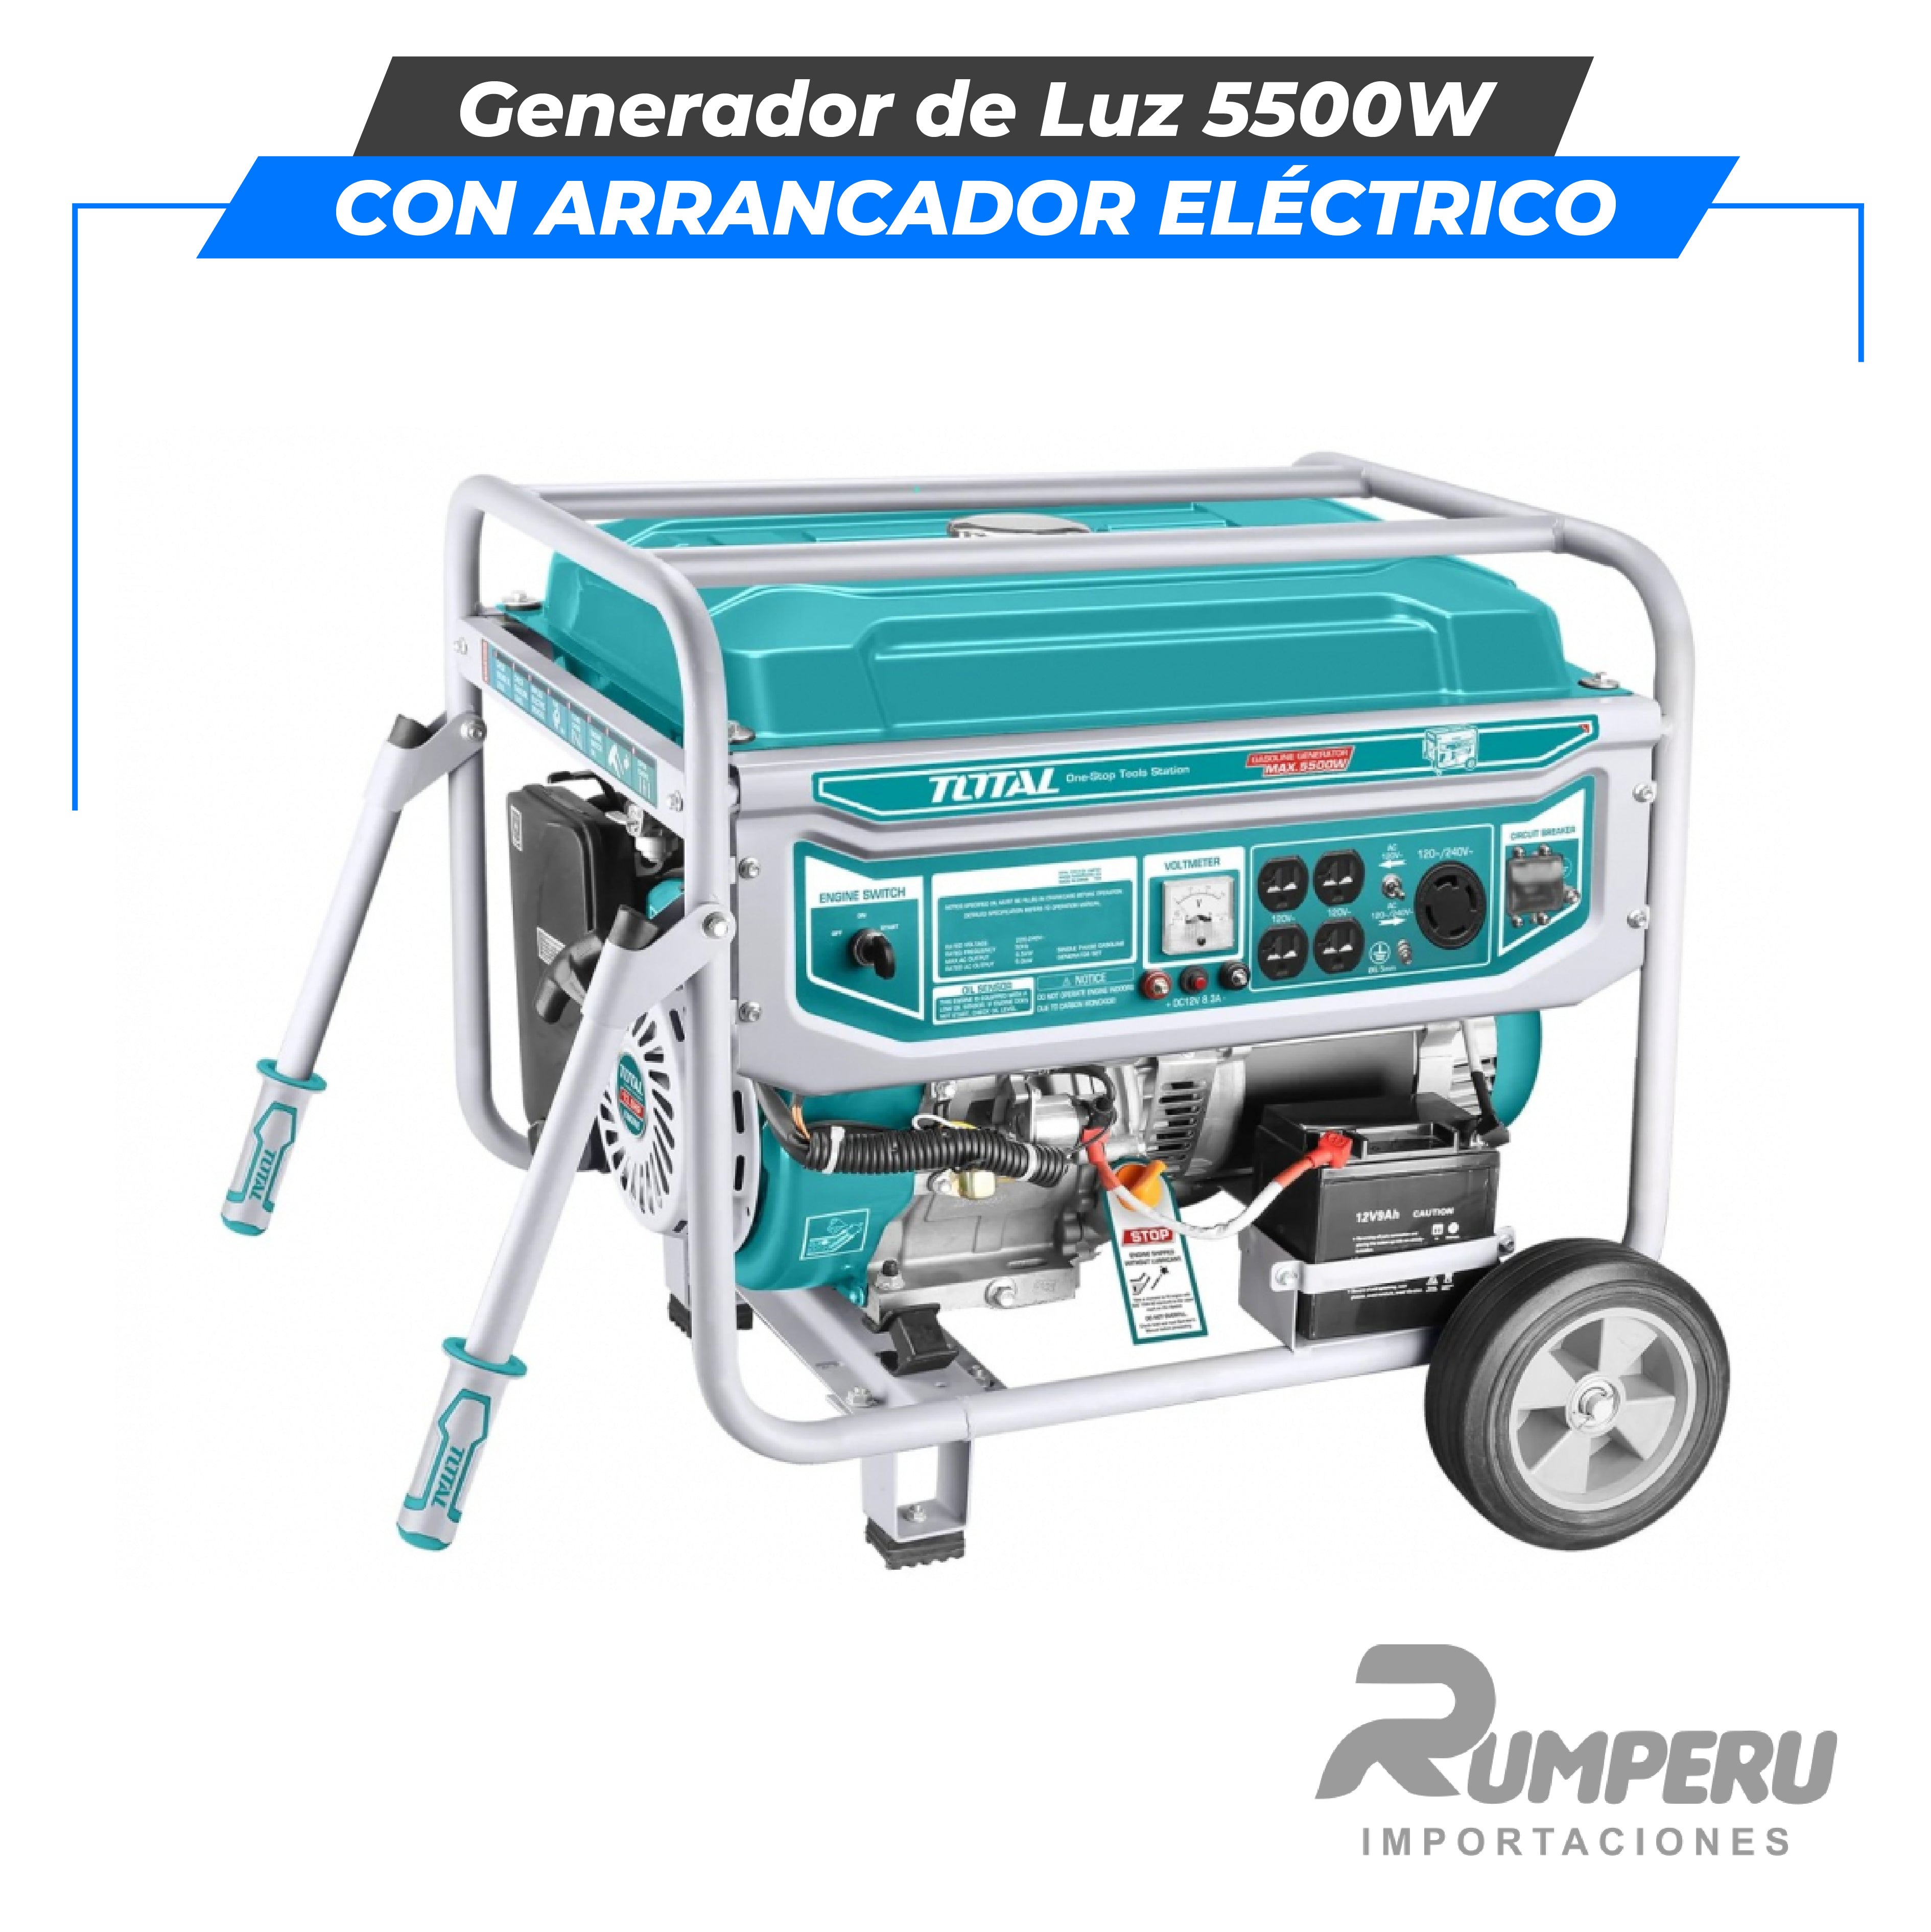 Generador de Luz 5500W (con arrancador eléctrico)